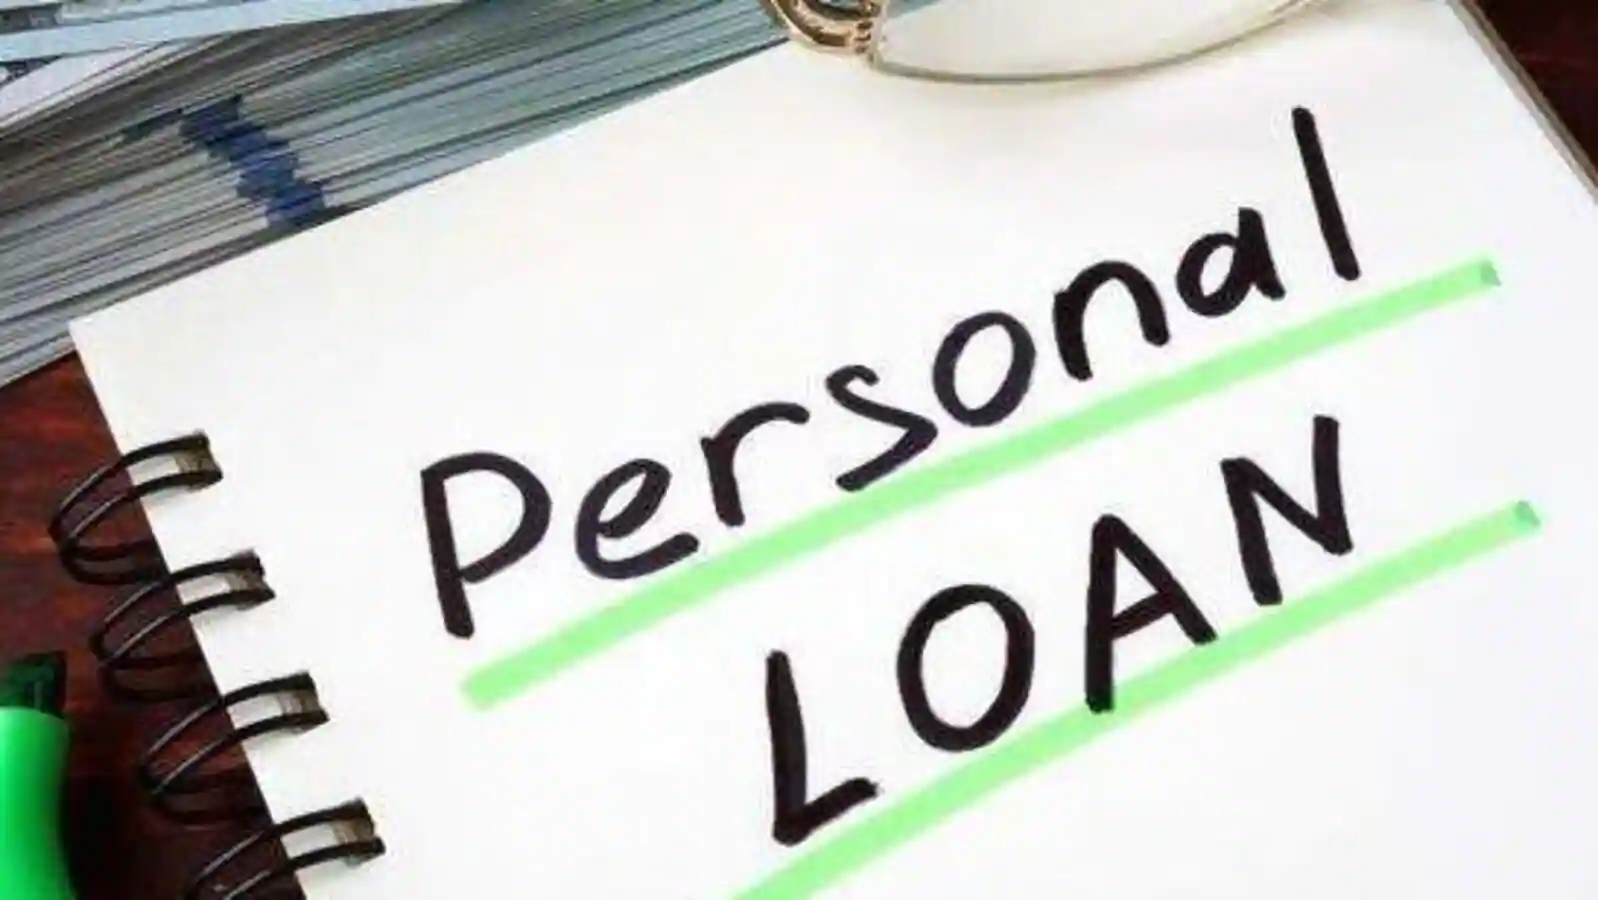 Navi Piramal Digital Personal Loan